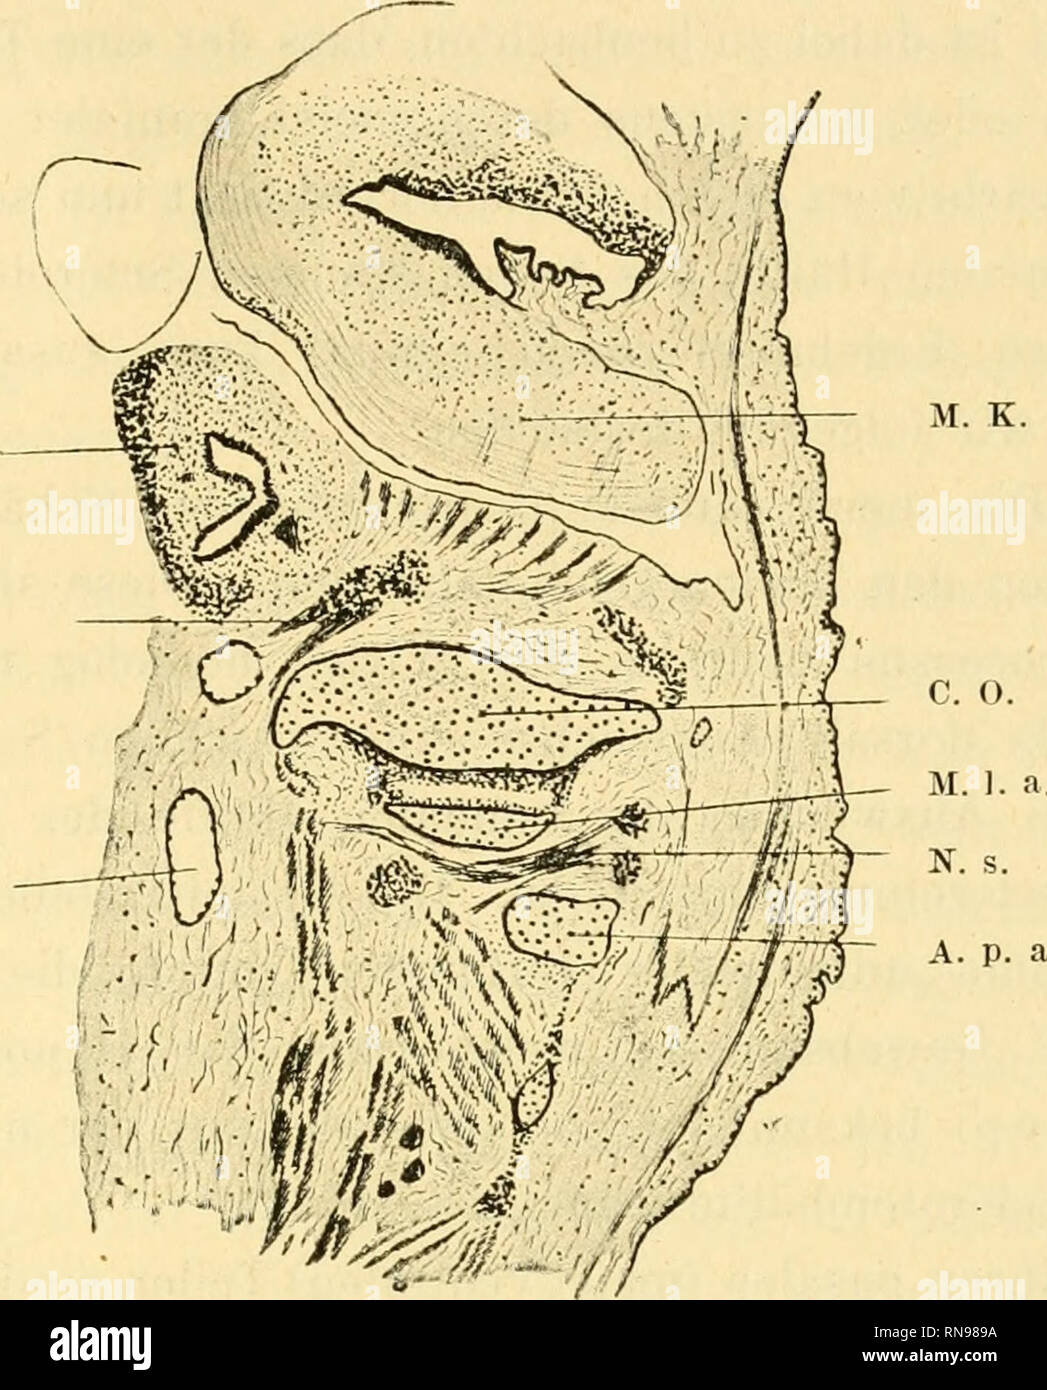 . Anatomische Hefte. Die Entwickelung der Cranio-vertebralgrenze beim Schaf. 439 der Atlas, welcher leicht zwei Teile unterscheiden lässt, ein cranialer Teil, die Massae laterales, und ein mehr dorso-cau- daler Teil, den Processus (arcus) neuralis. Dorsalwärts vom Atlasi ist das Ganglion des ersten Spinalnerven zu sehen, mit- samt einiger in ventraler Richtung daraus hervortretenden. o. K. L. S. V. j. M. K.. Fig. 9. Embryo Ovis arie. K. K. 9. II. 3. (Sagittalschnitt). M. o. = Medulla oblongata; C. O = condylus occipitalis; M. 1. a. = Massa lateralis atlantis; N. S. I = Erster Spinalnerv; A. p. Stock Photo